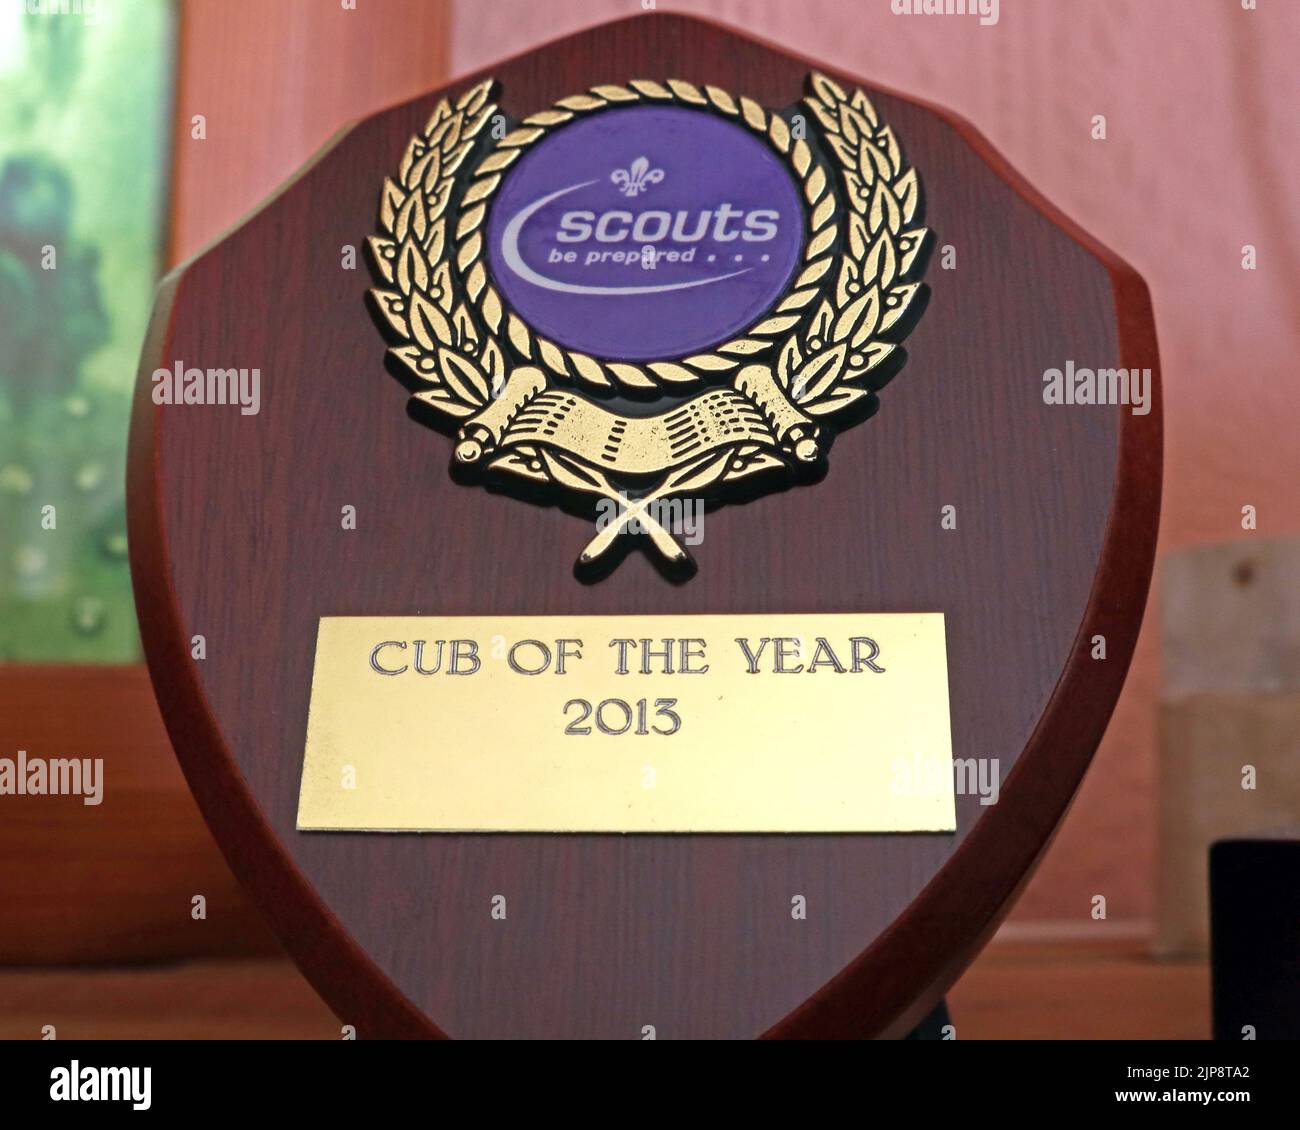 Scouts, trophée cub de l'année, Royaume-Uni Banque D'Images